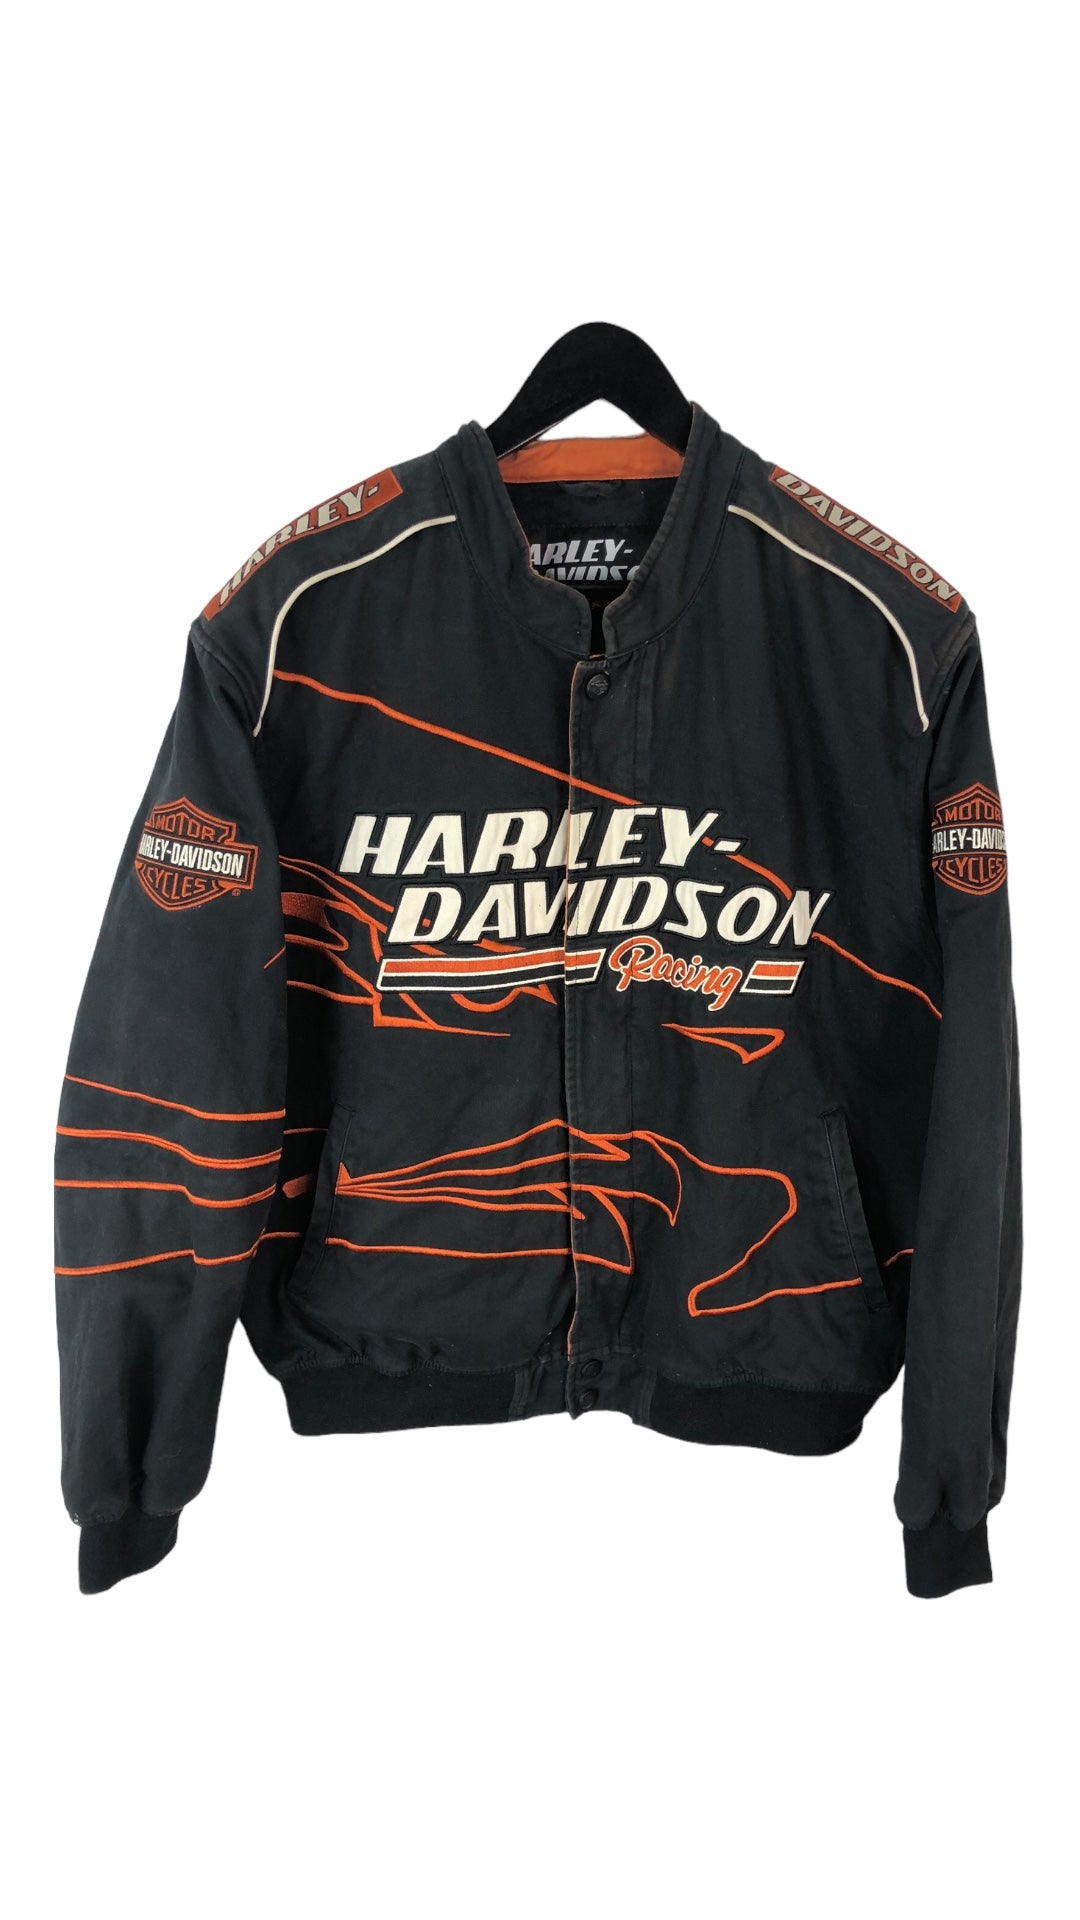 VTG Harley Davidson Racing Cotton Nascar Jacket Sz Large